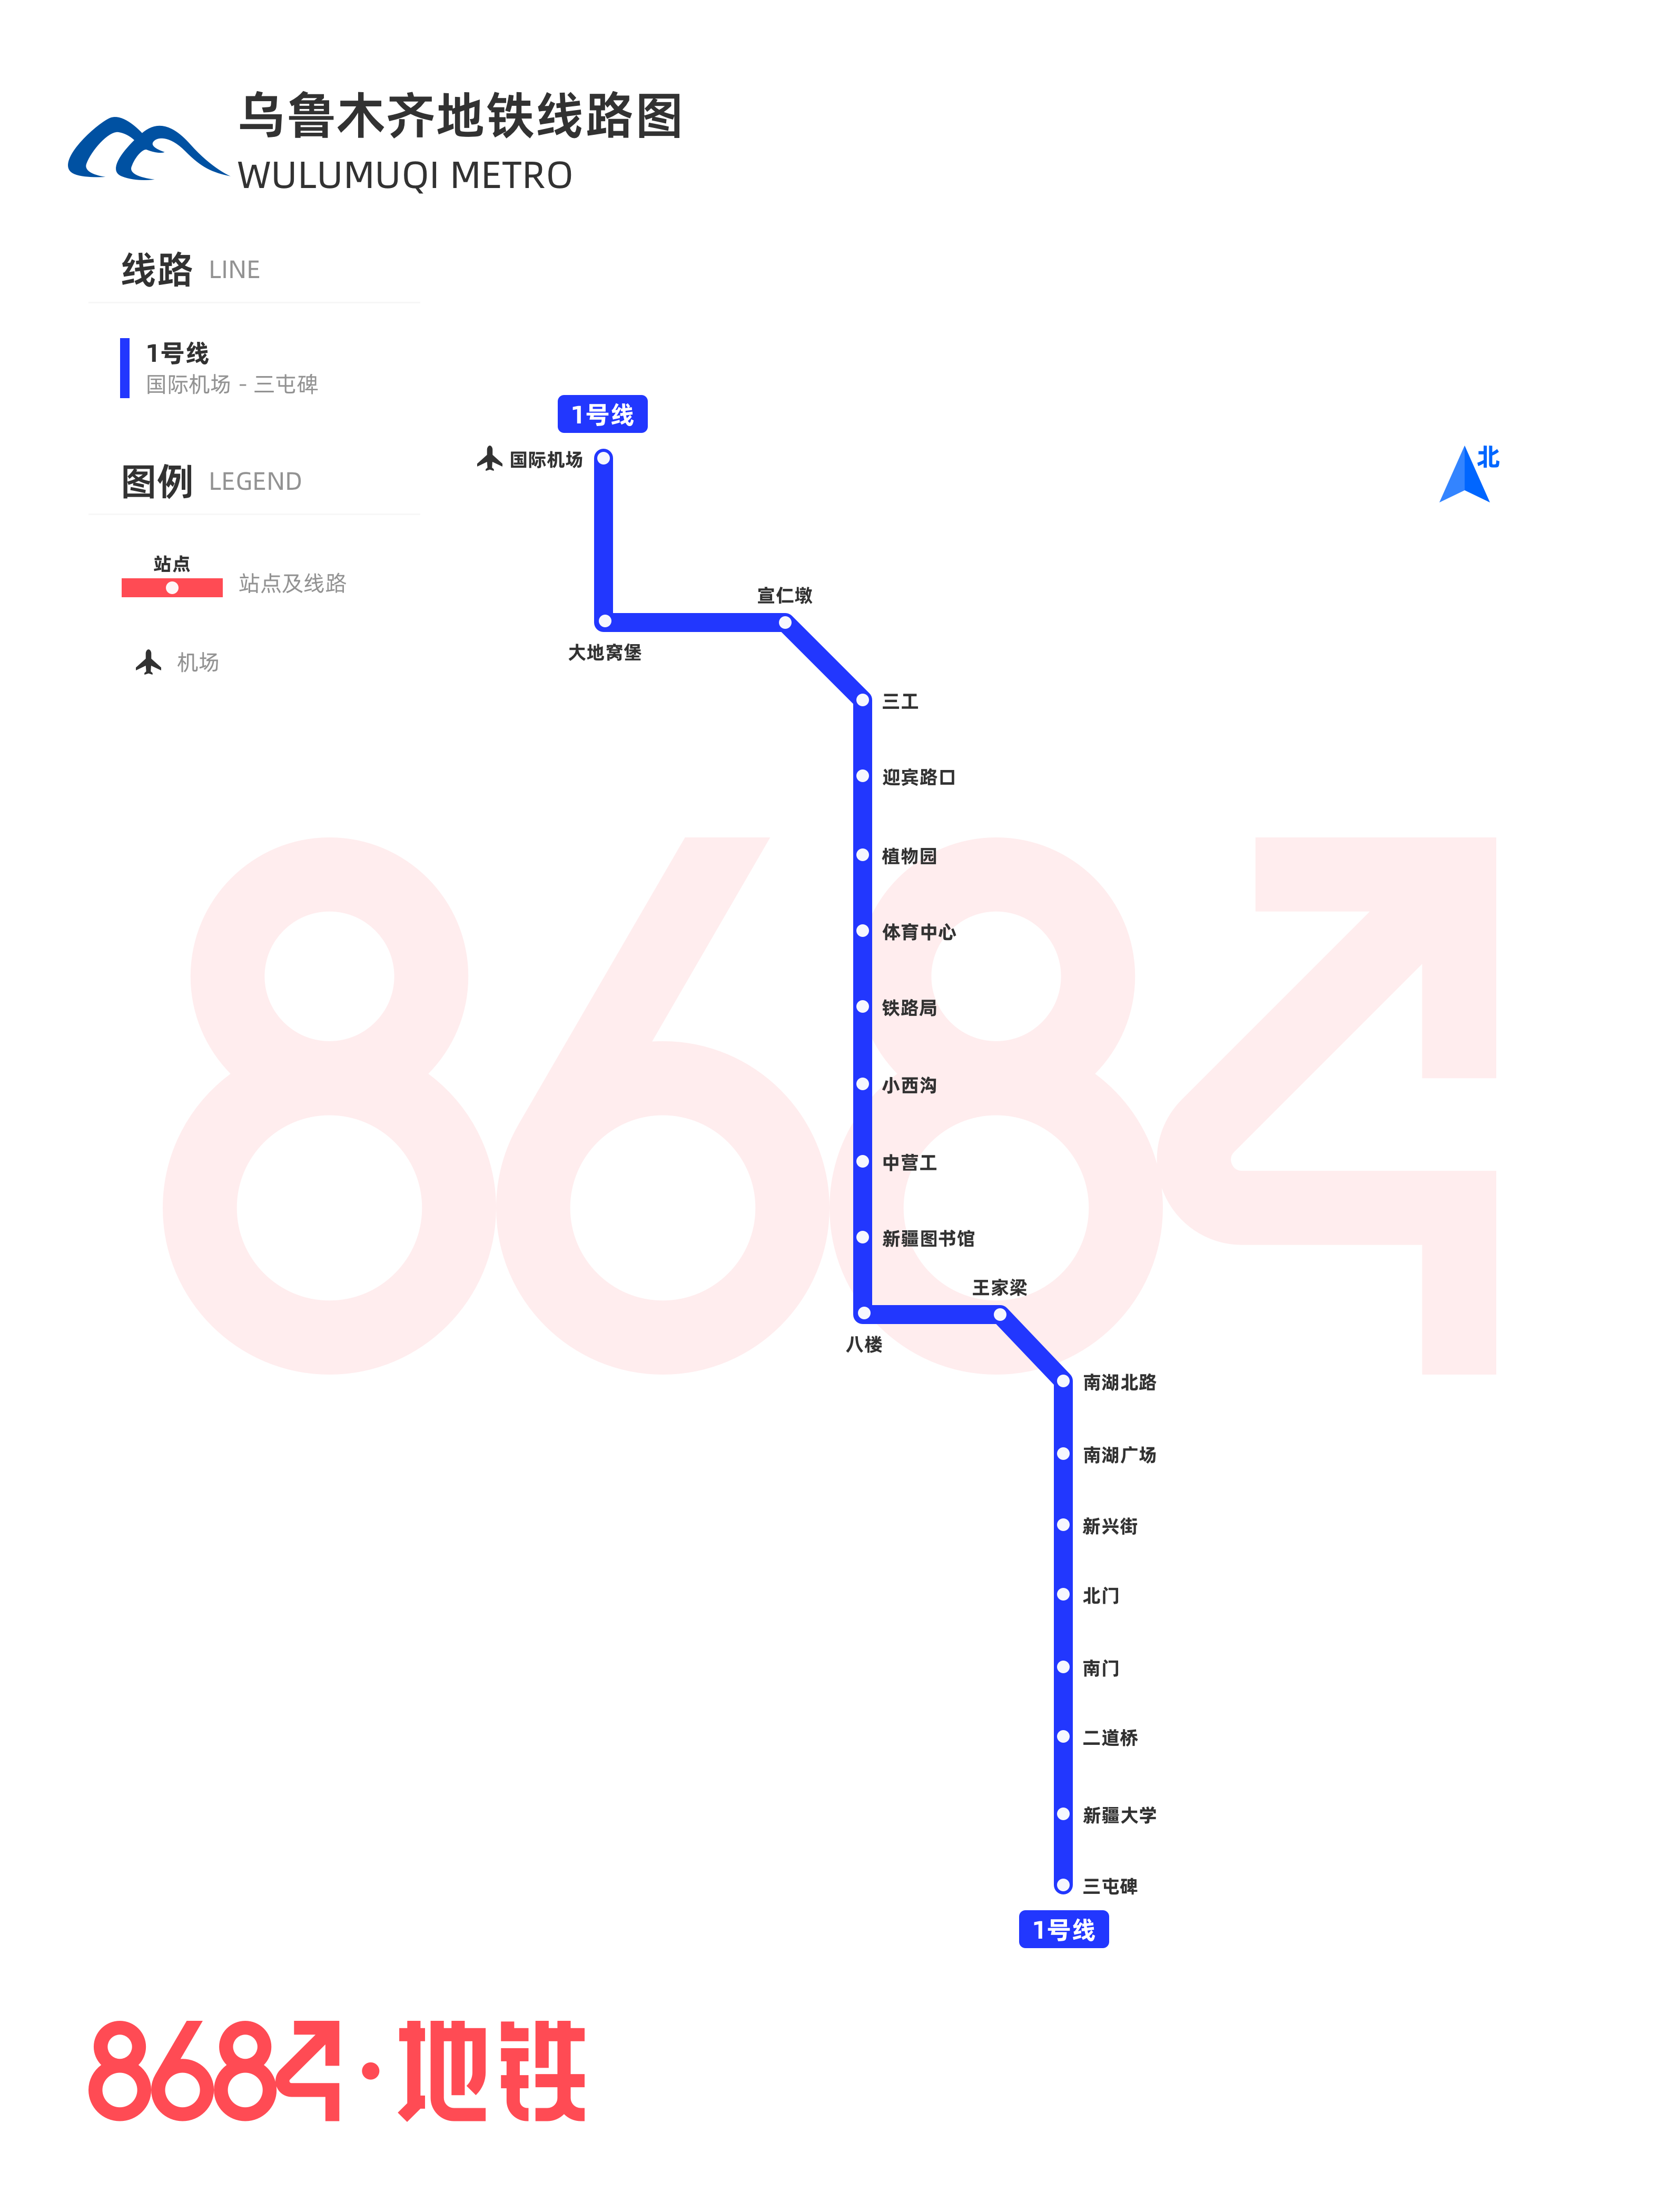 乌鲁木齐地铁线路图